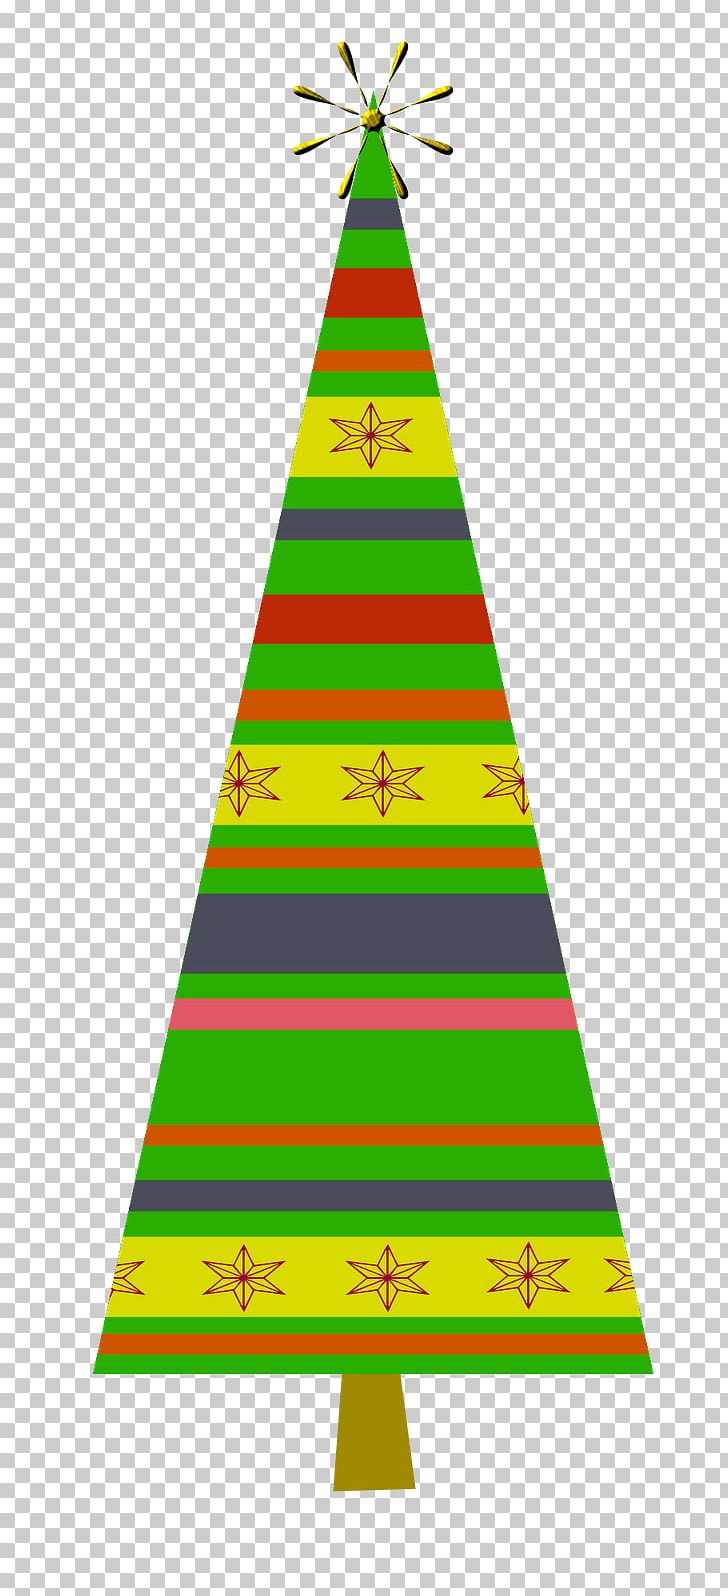 Christmas Tree Christmas Ornament Triangle Line PNG, Clipart, Angle, Area, Christmas Day, Christmas Decoration, Christmas Ornament Free PNG Download